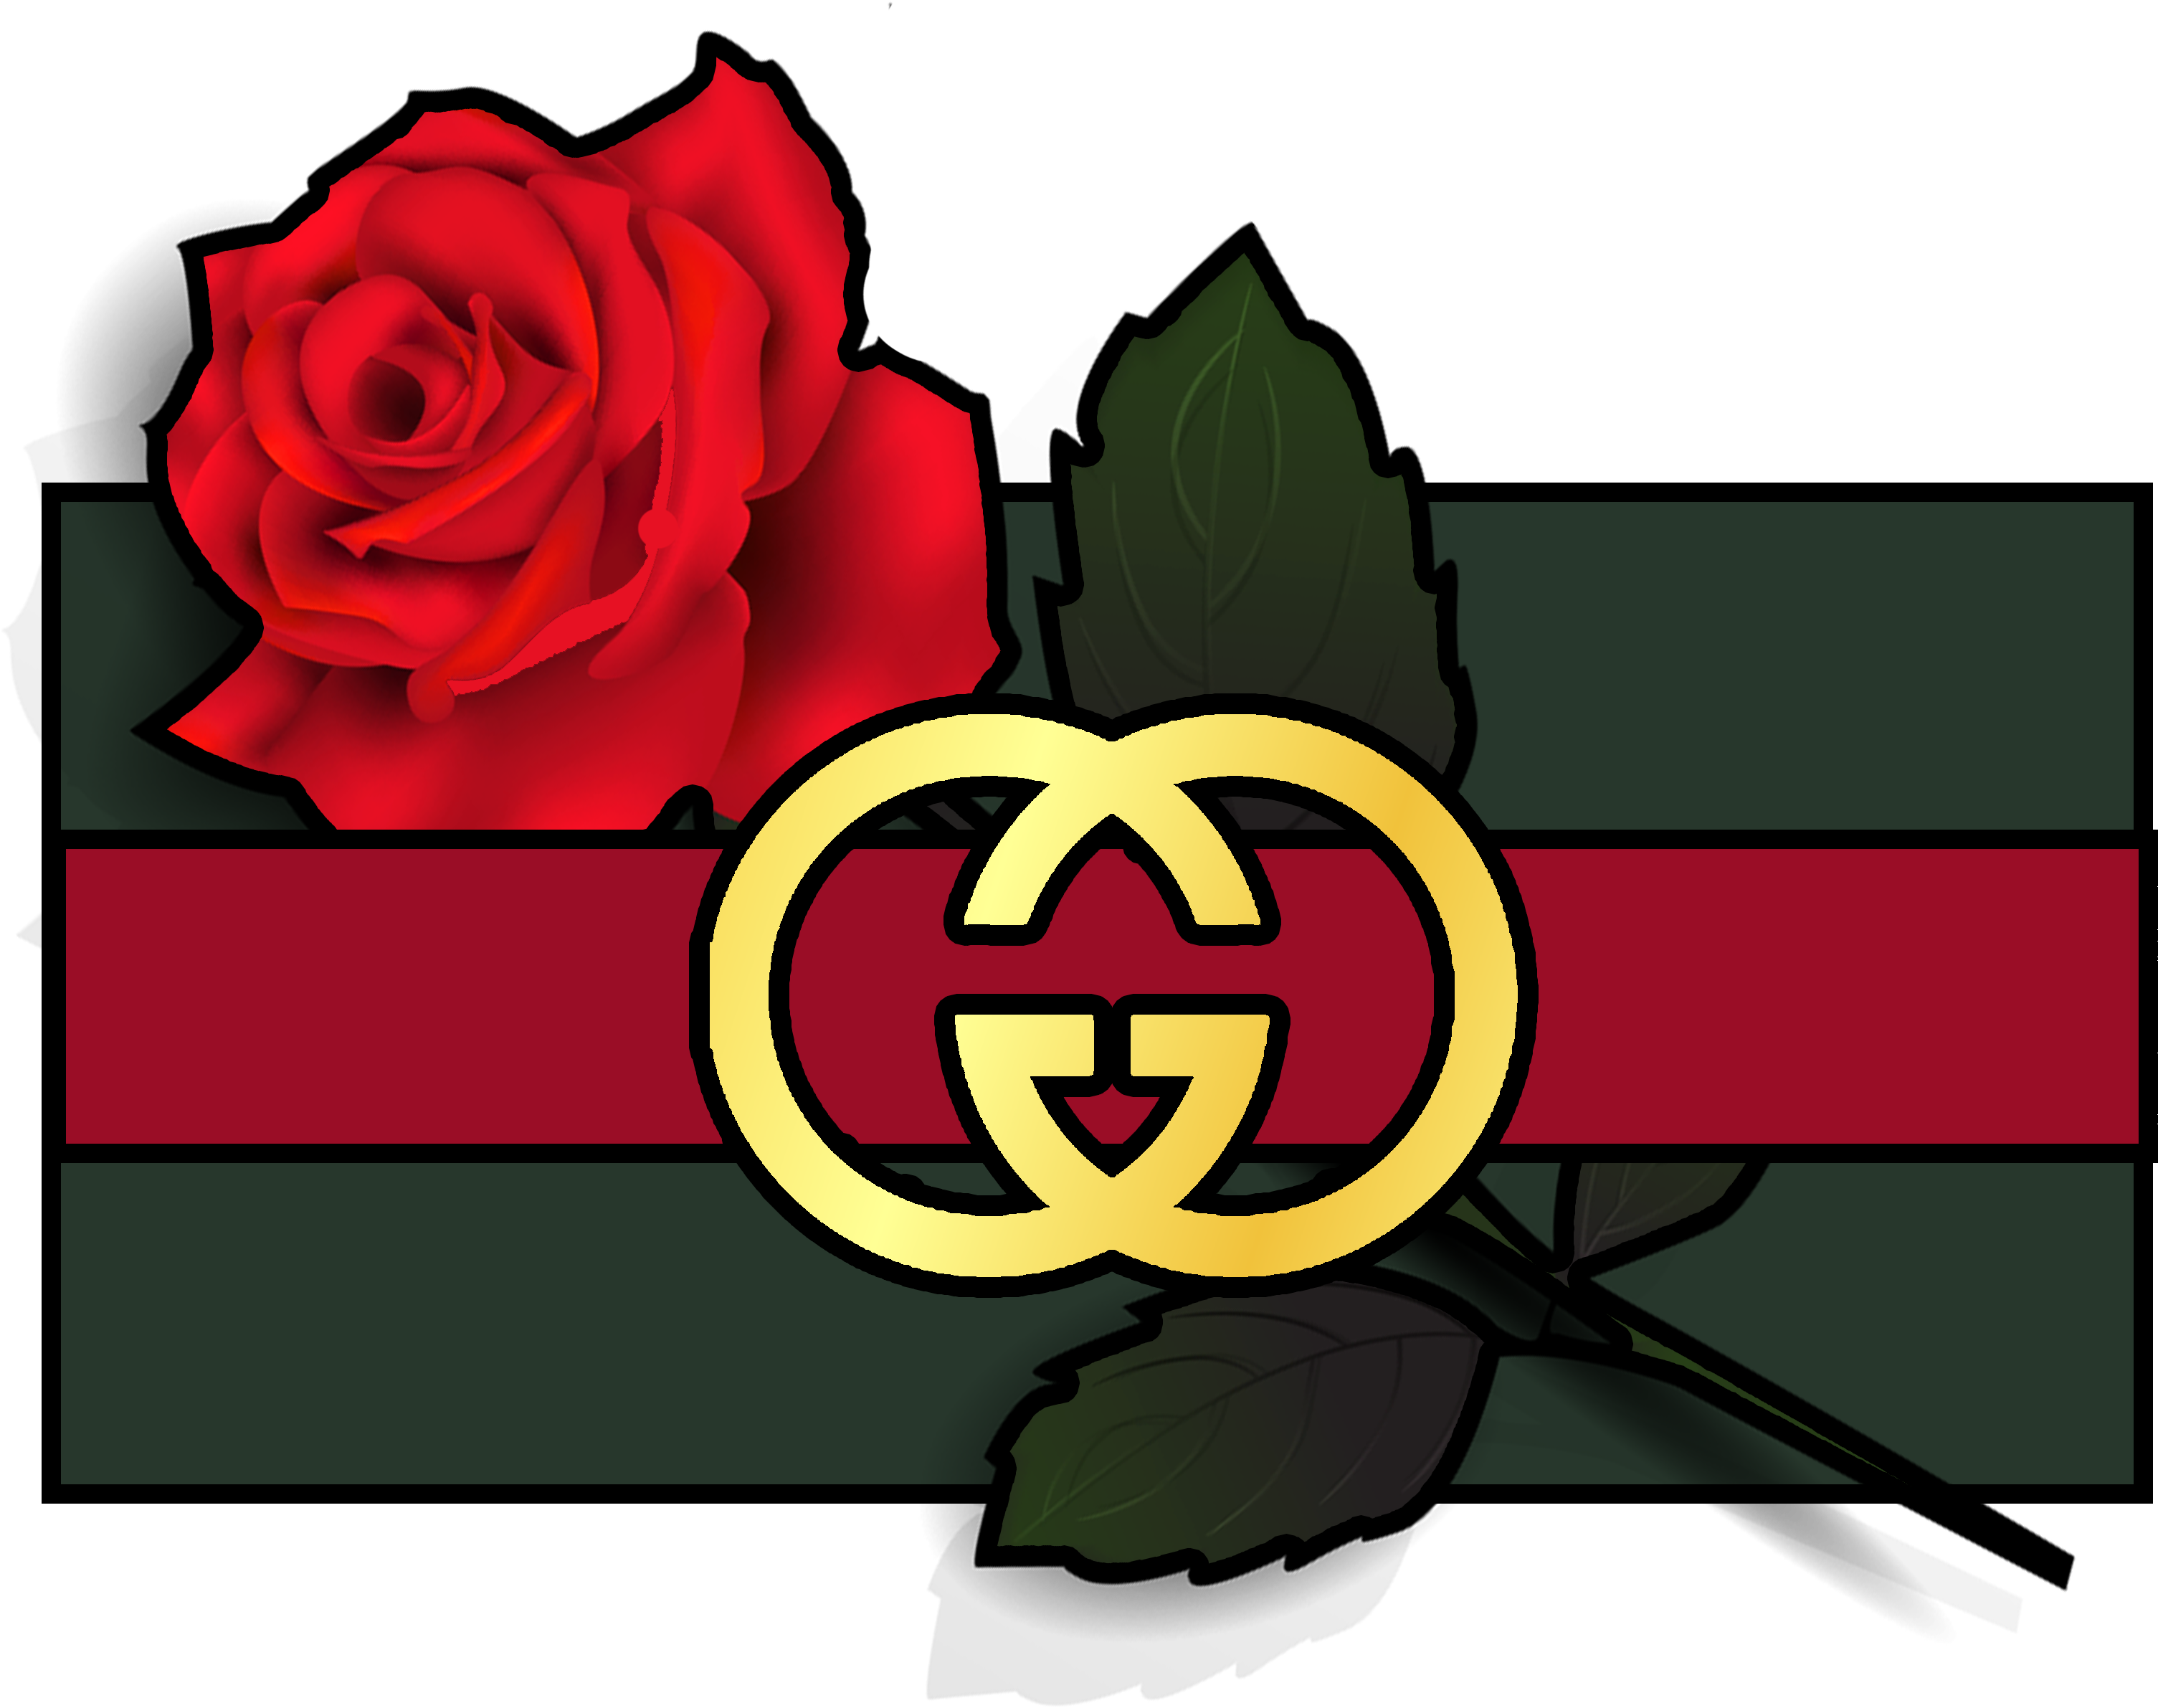 Gucci Logo Transparent Image | PNG Arts